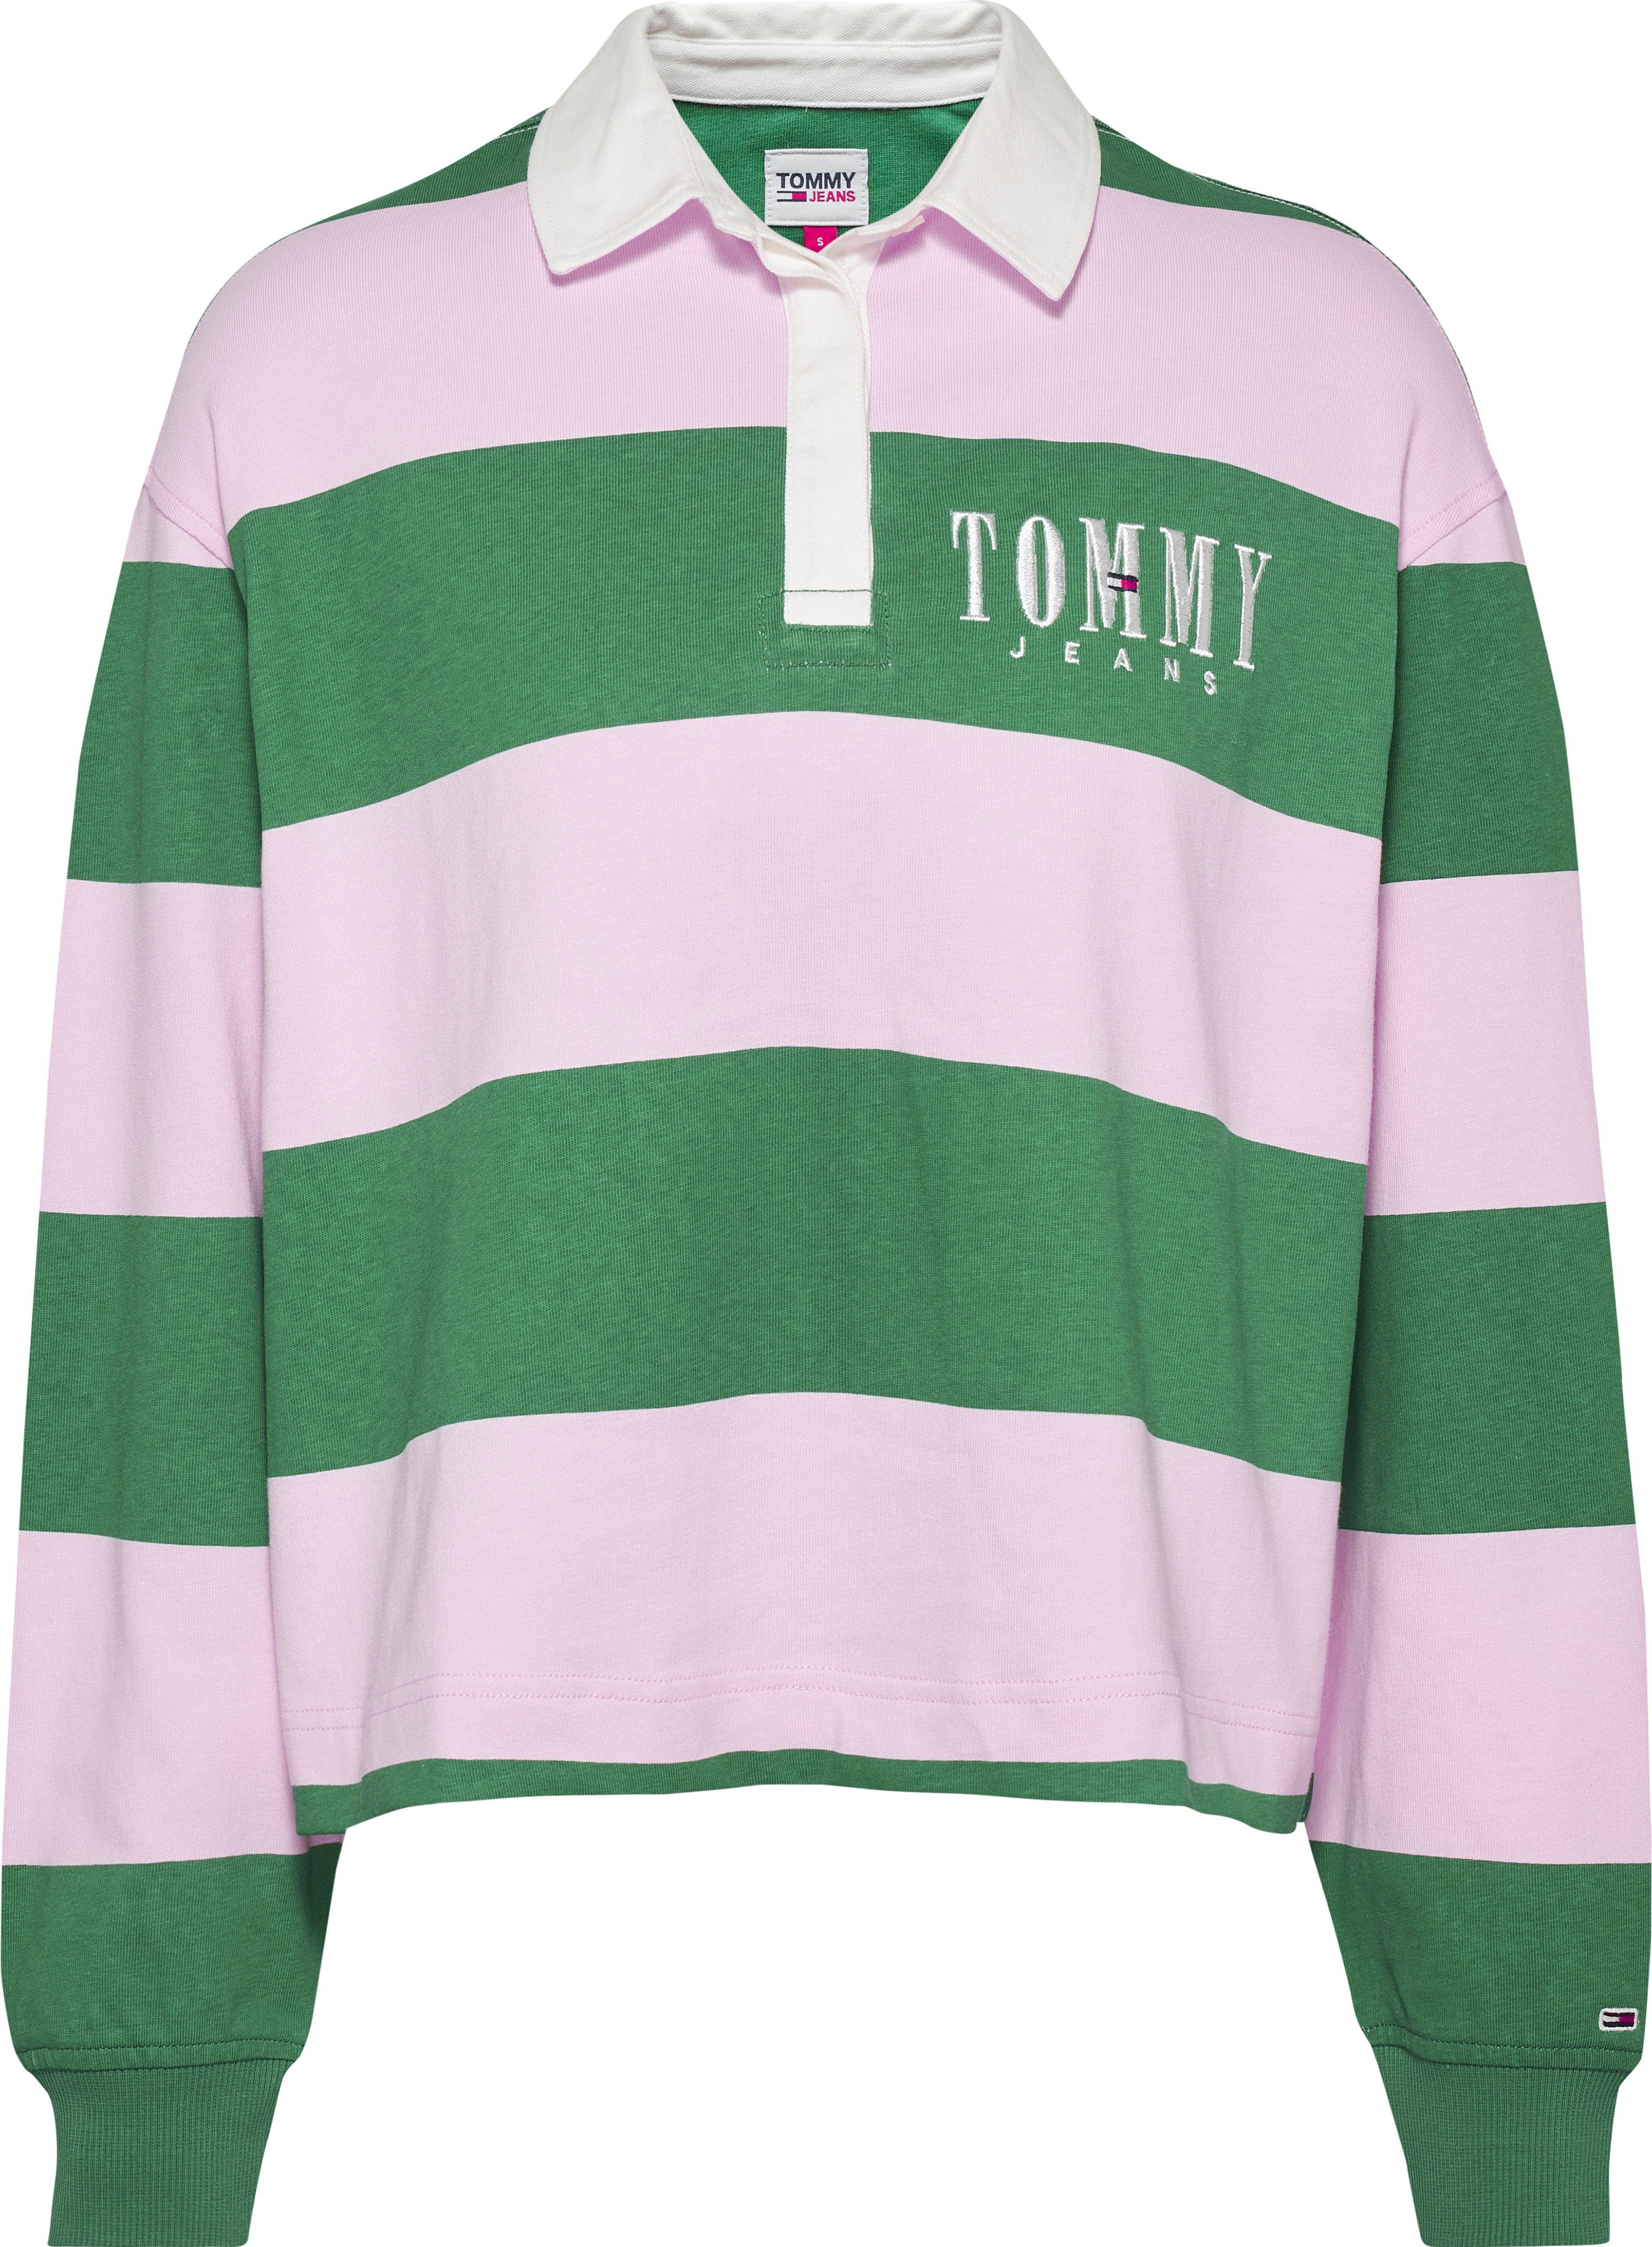 Tommy Hilfiger Damen Poloshirts online kaufen » Polohemden | OTTO